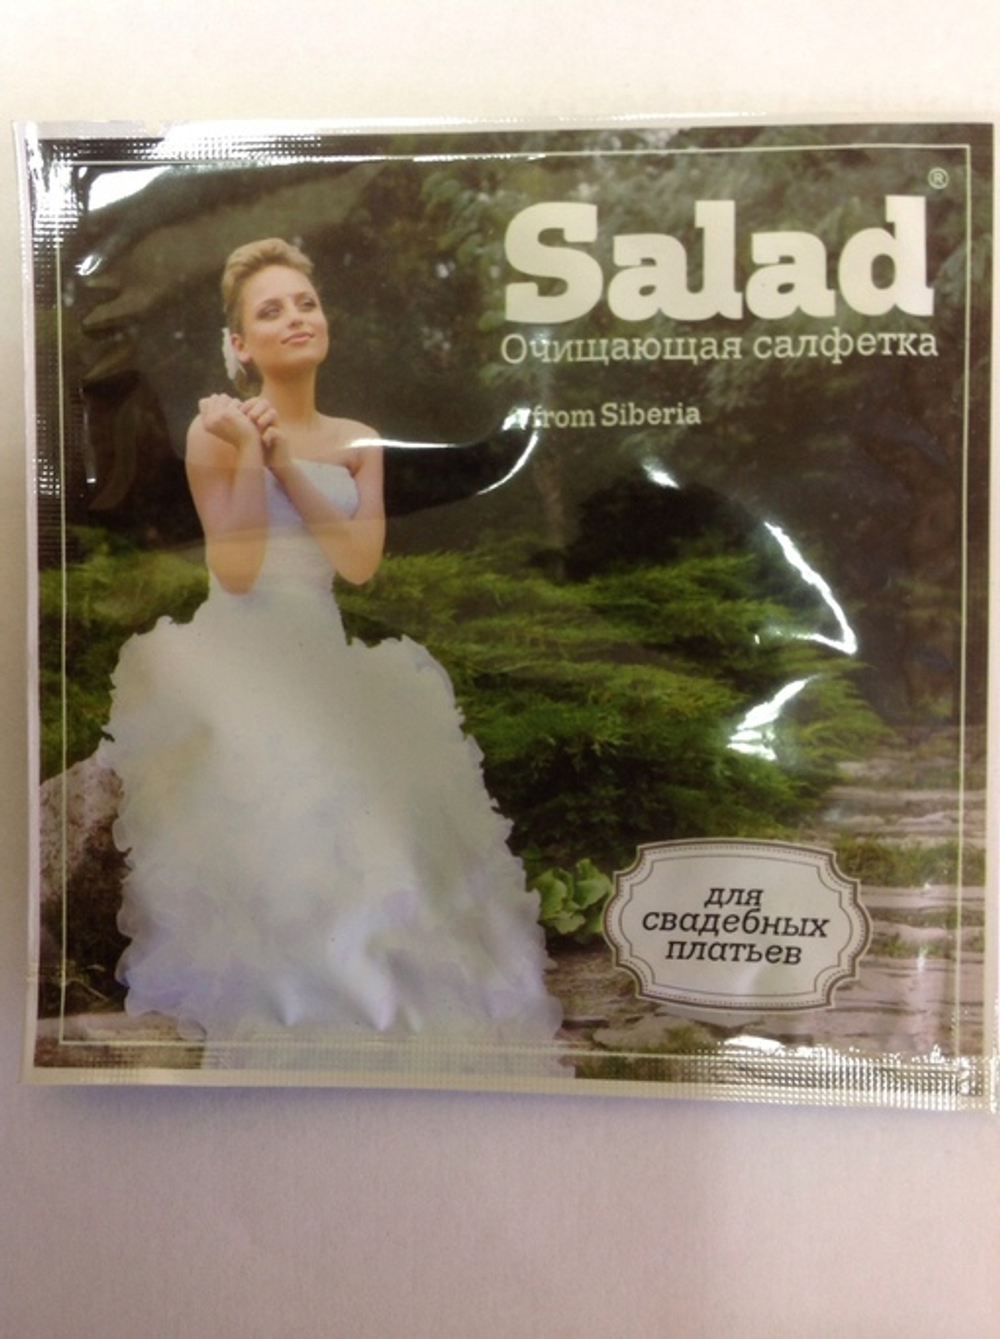 Салфетка очищающая для свадебных платьев Salad